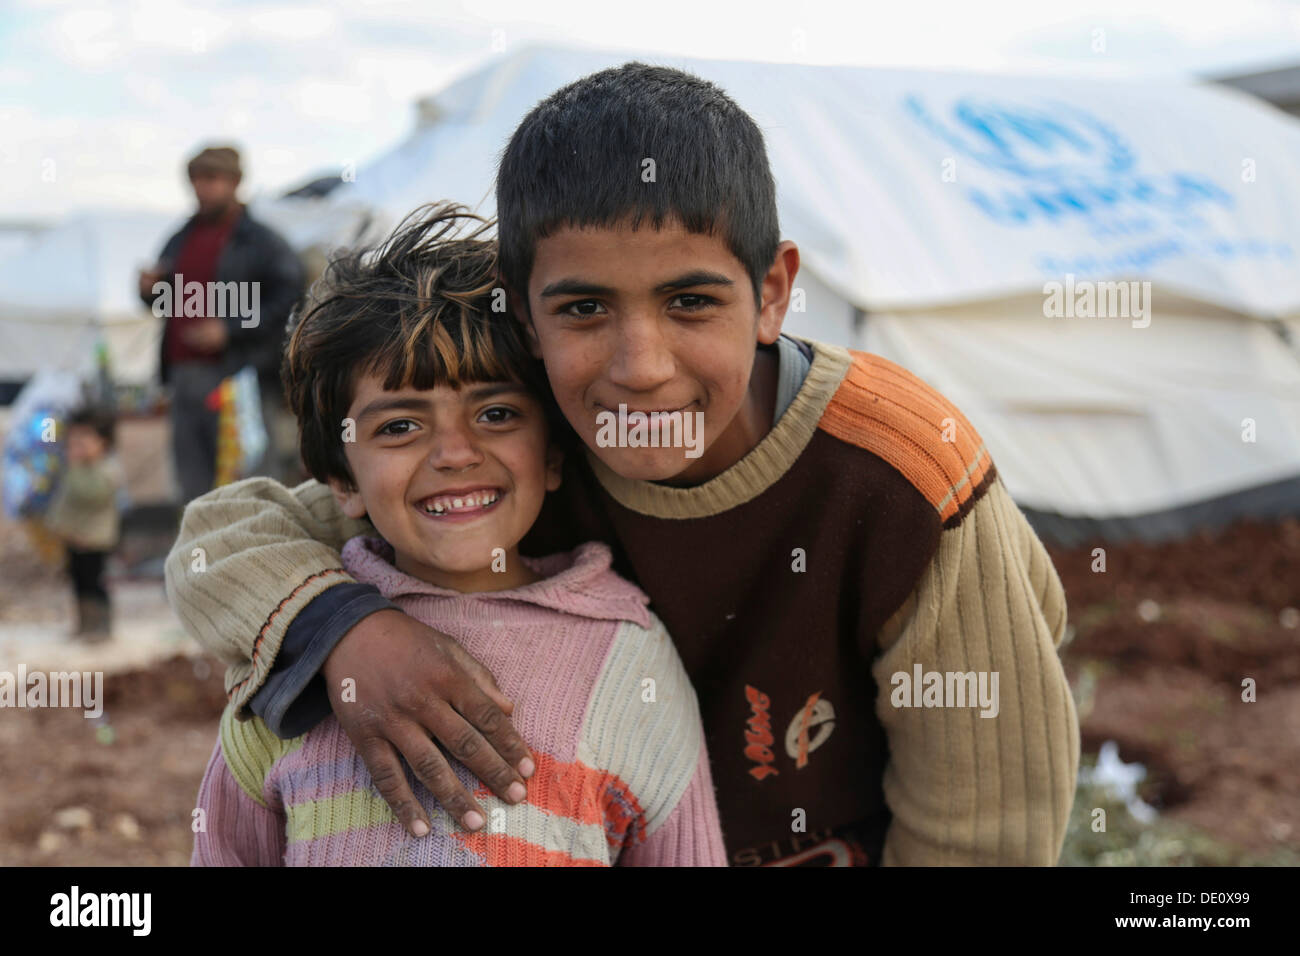 Les enfants dans un camp de réfugiés syriens de la guerre civile, près de la frontière turque Banque D'Images